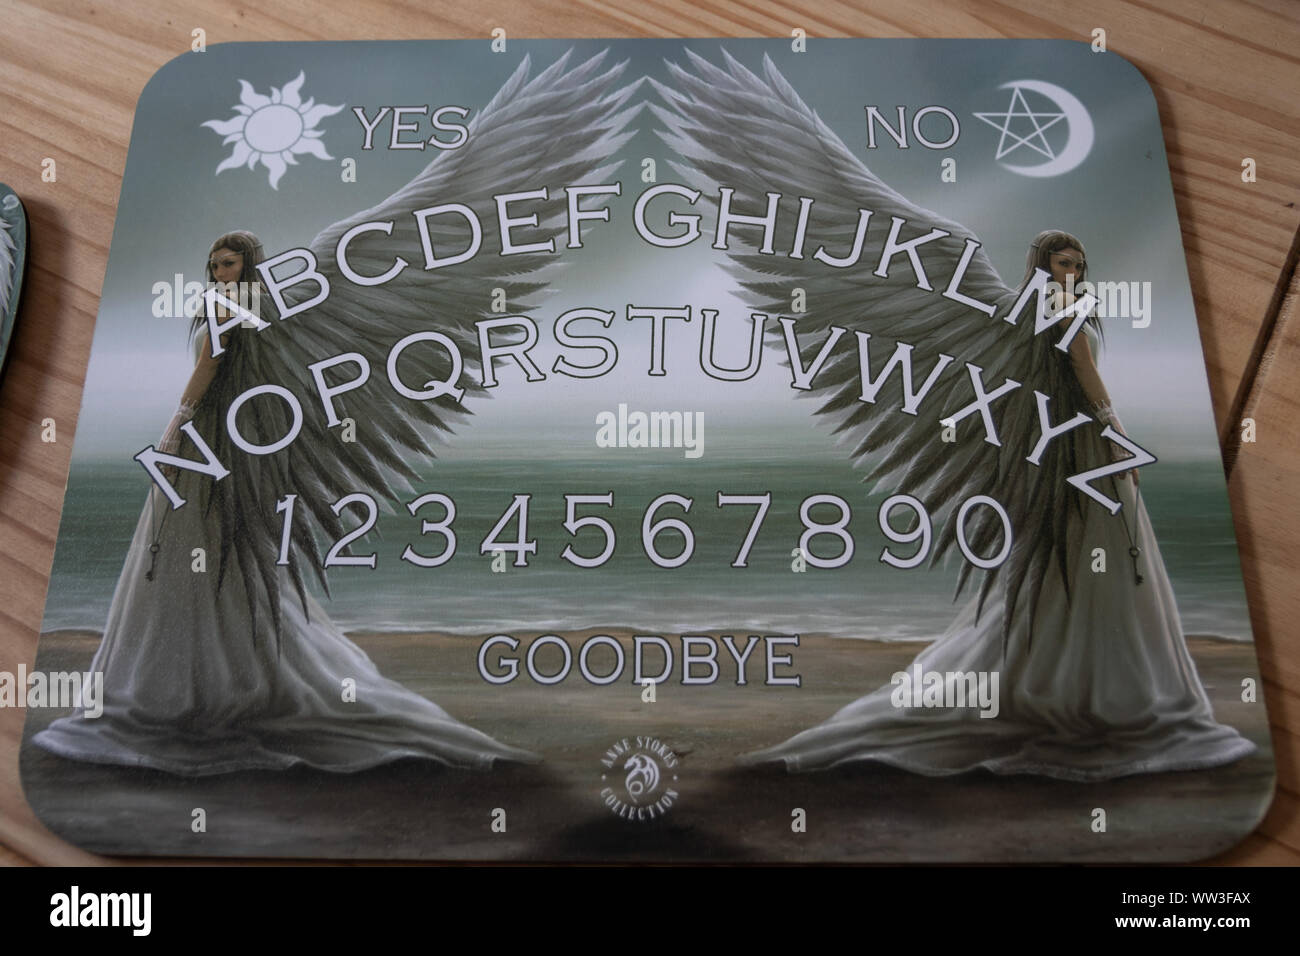 Un ange a utilisé pour évoquer des esprits ou anges ressemble beaucoup à un Ouija board Banque D'Images